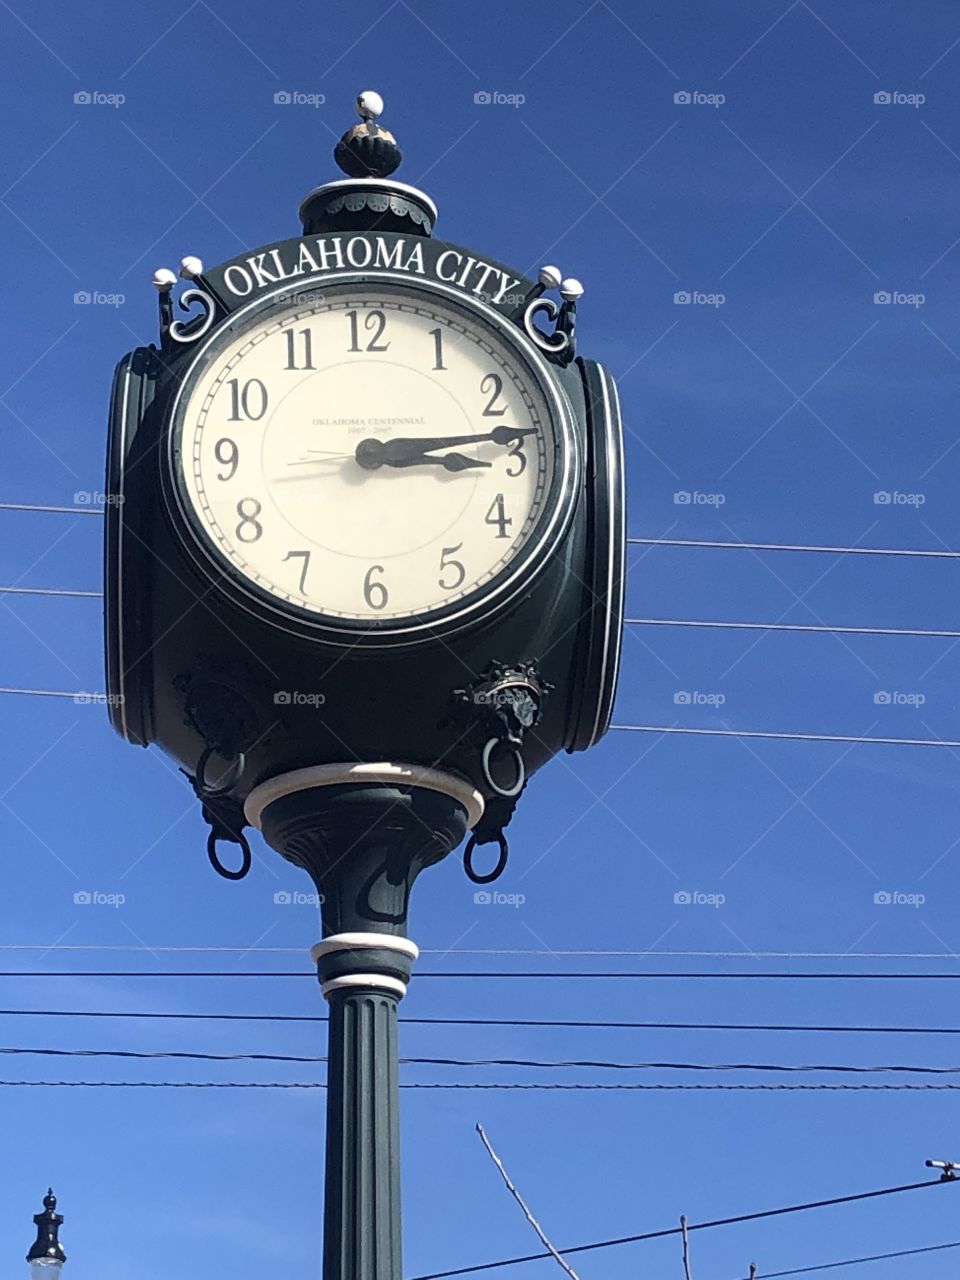 Oklahoma City street clock 